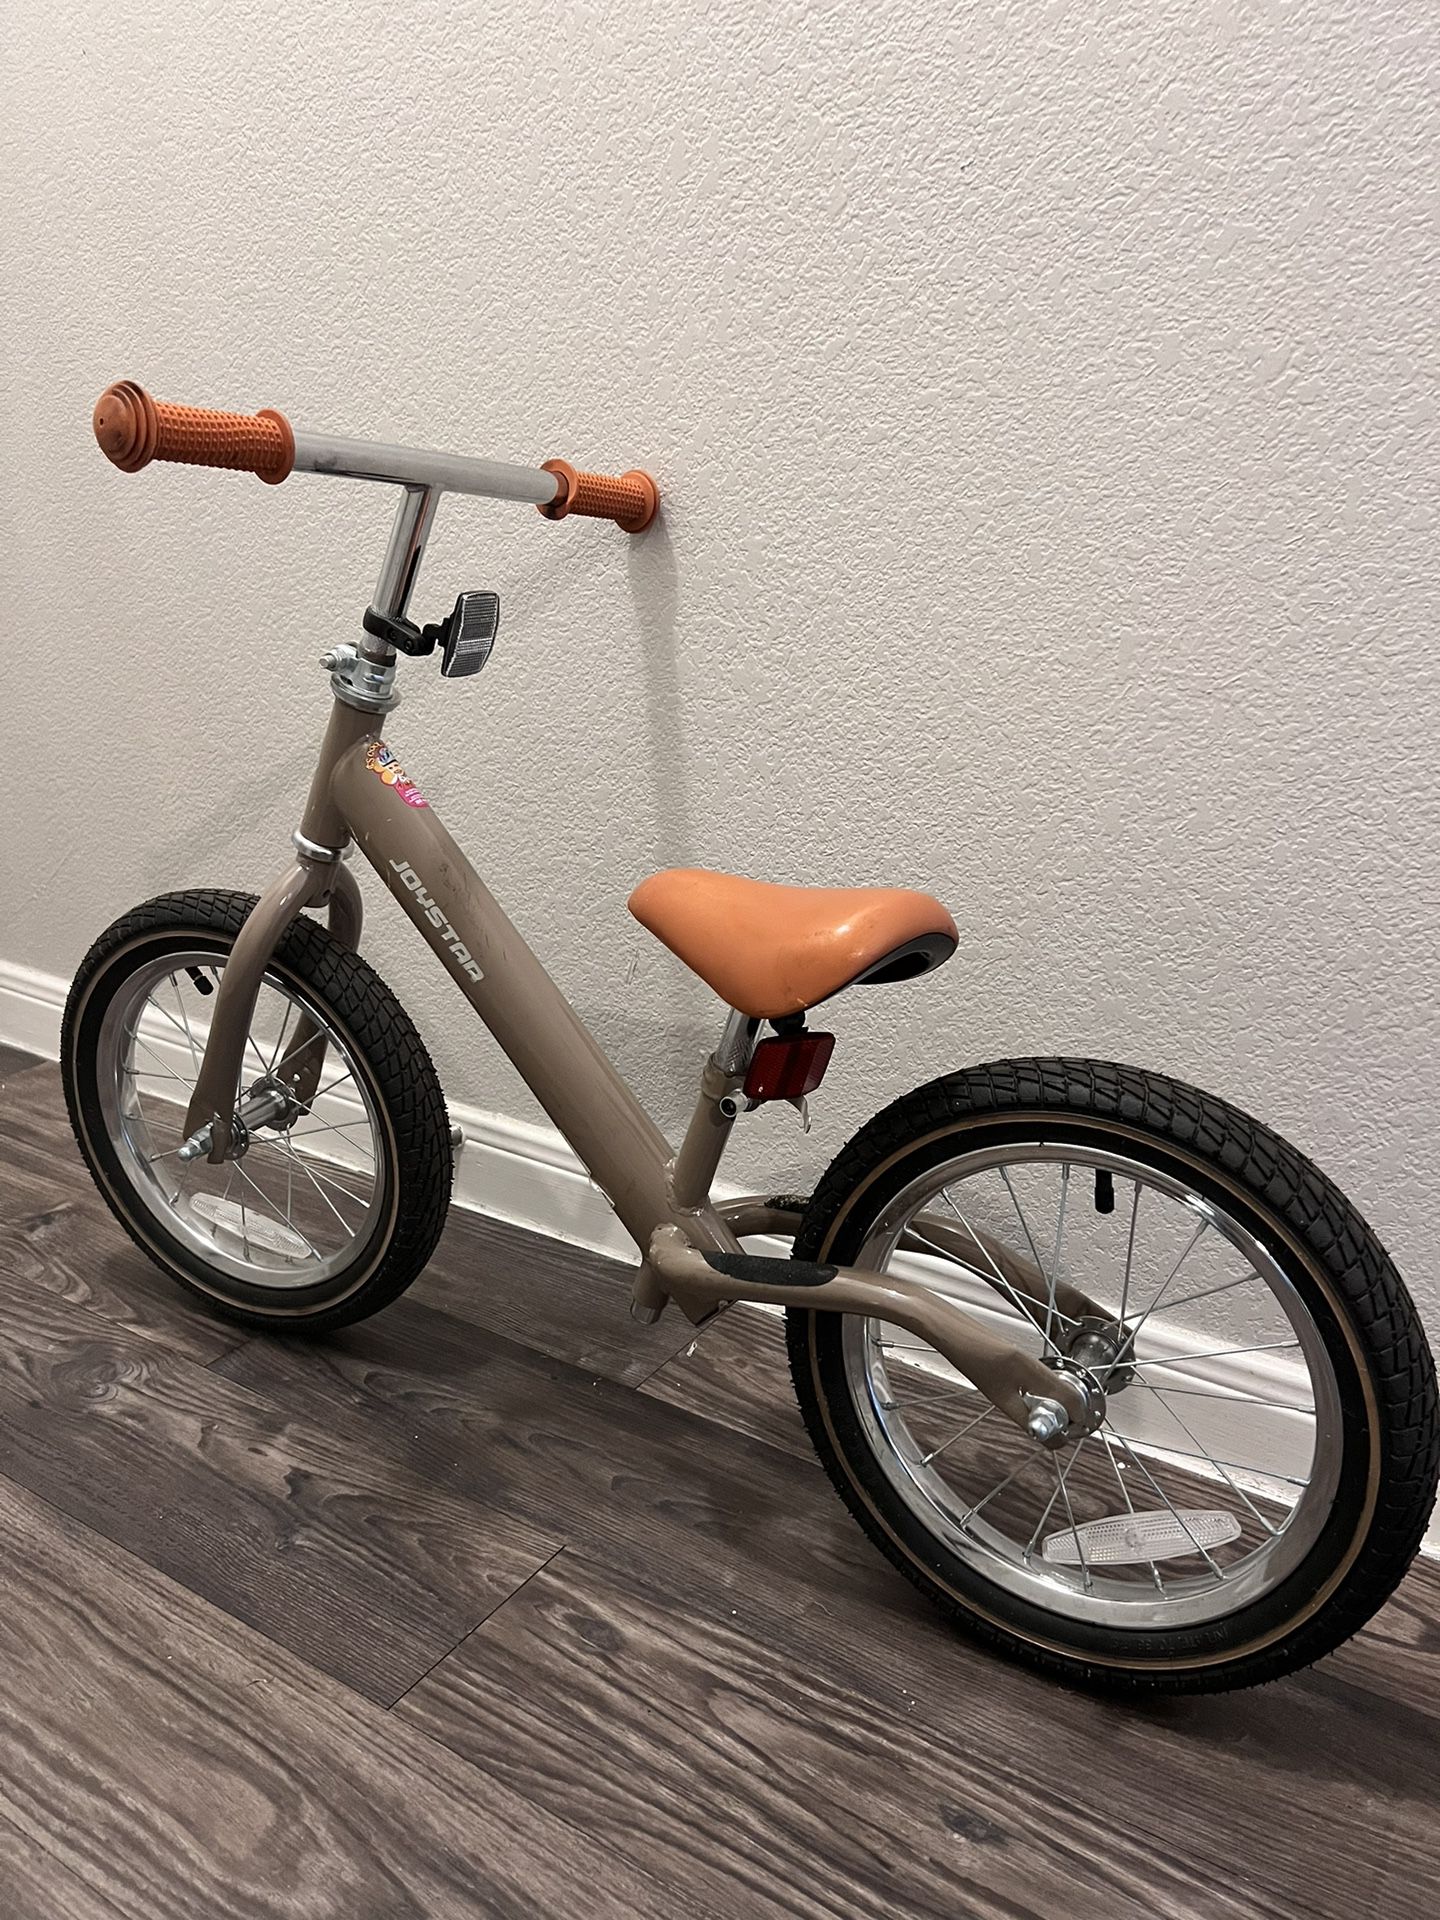 Joystar Balance Bike For Kids 